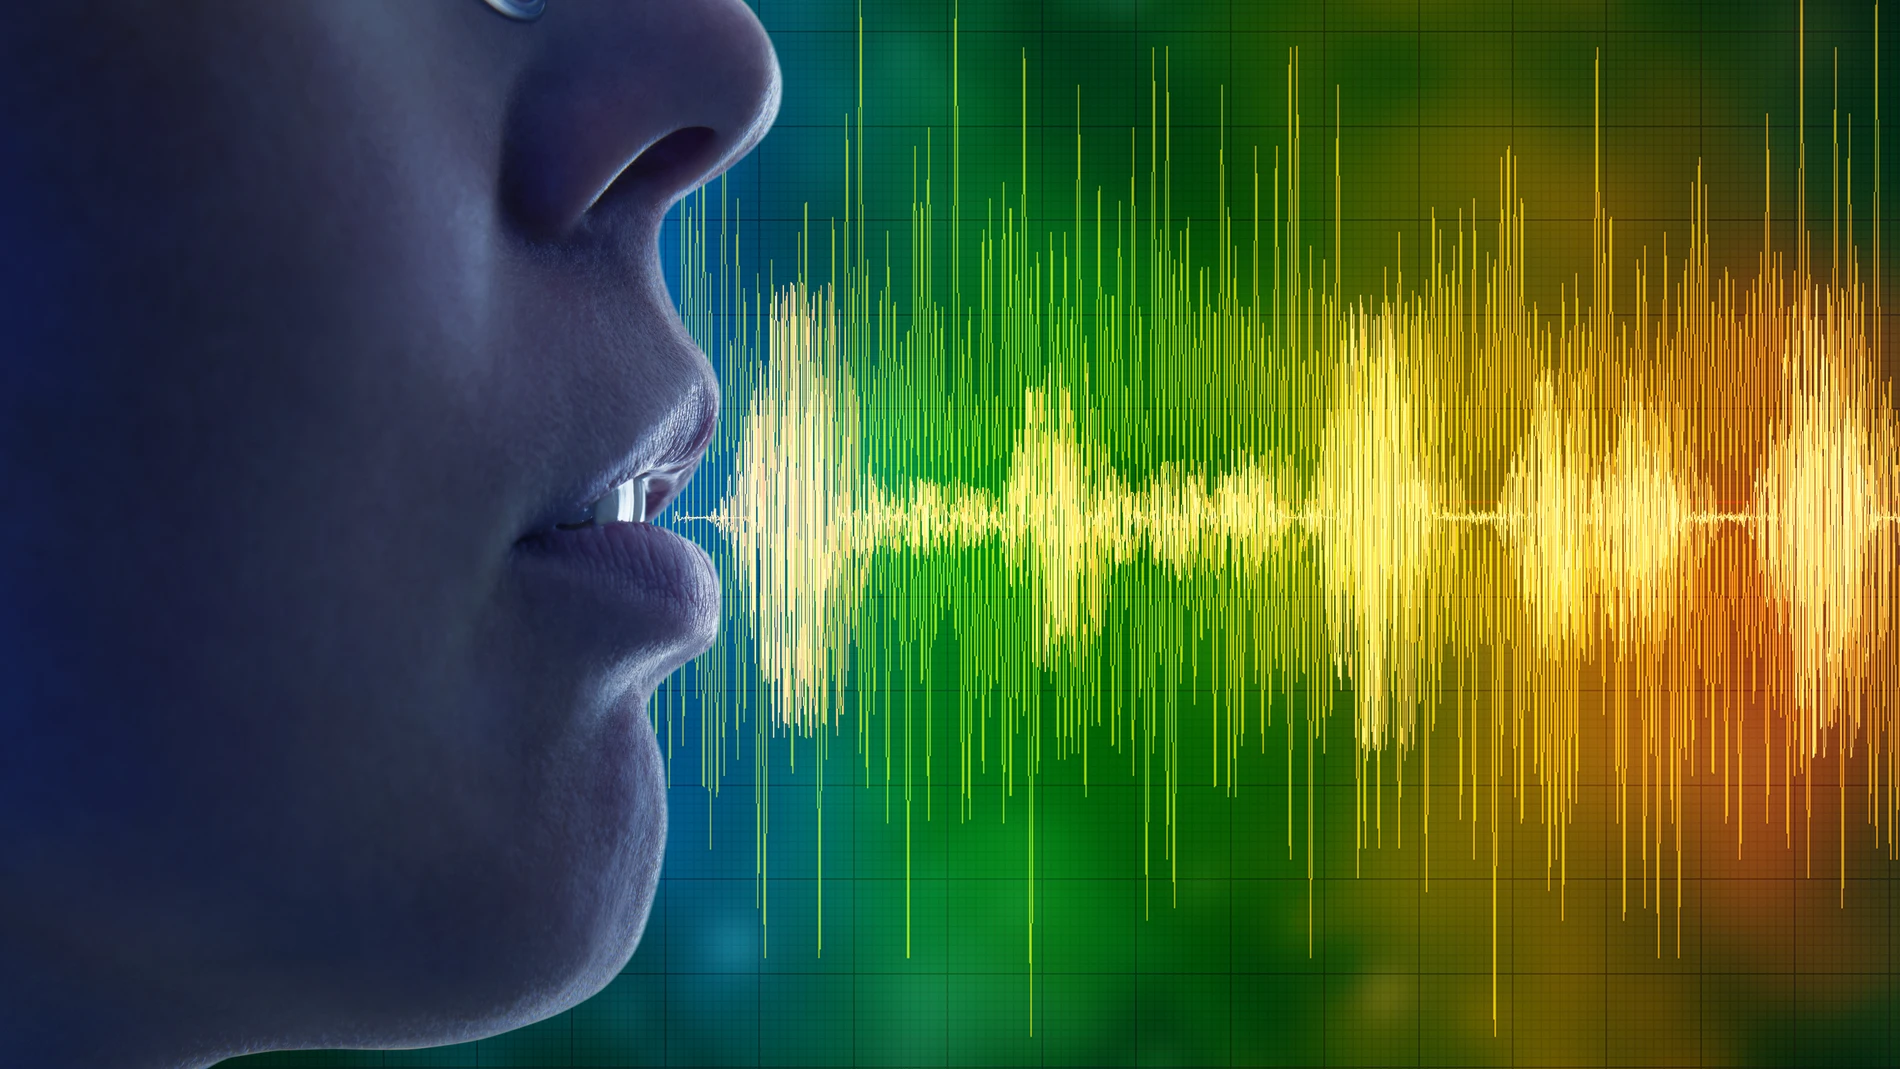 Instalar cambios permanentes en nuestra voz es posible con un poco de entrenamiento | Fuente: Dreamstime